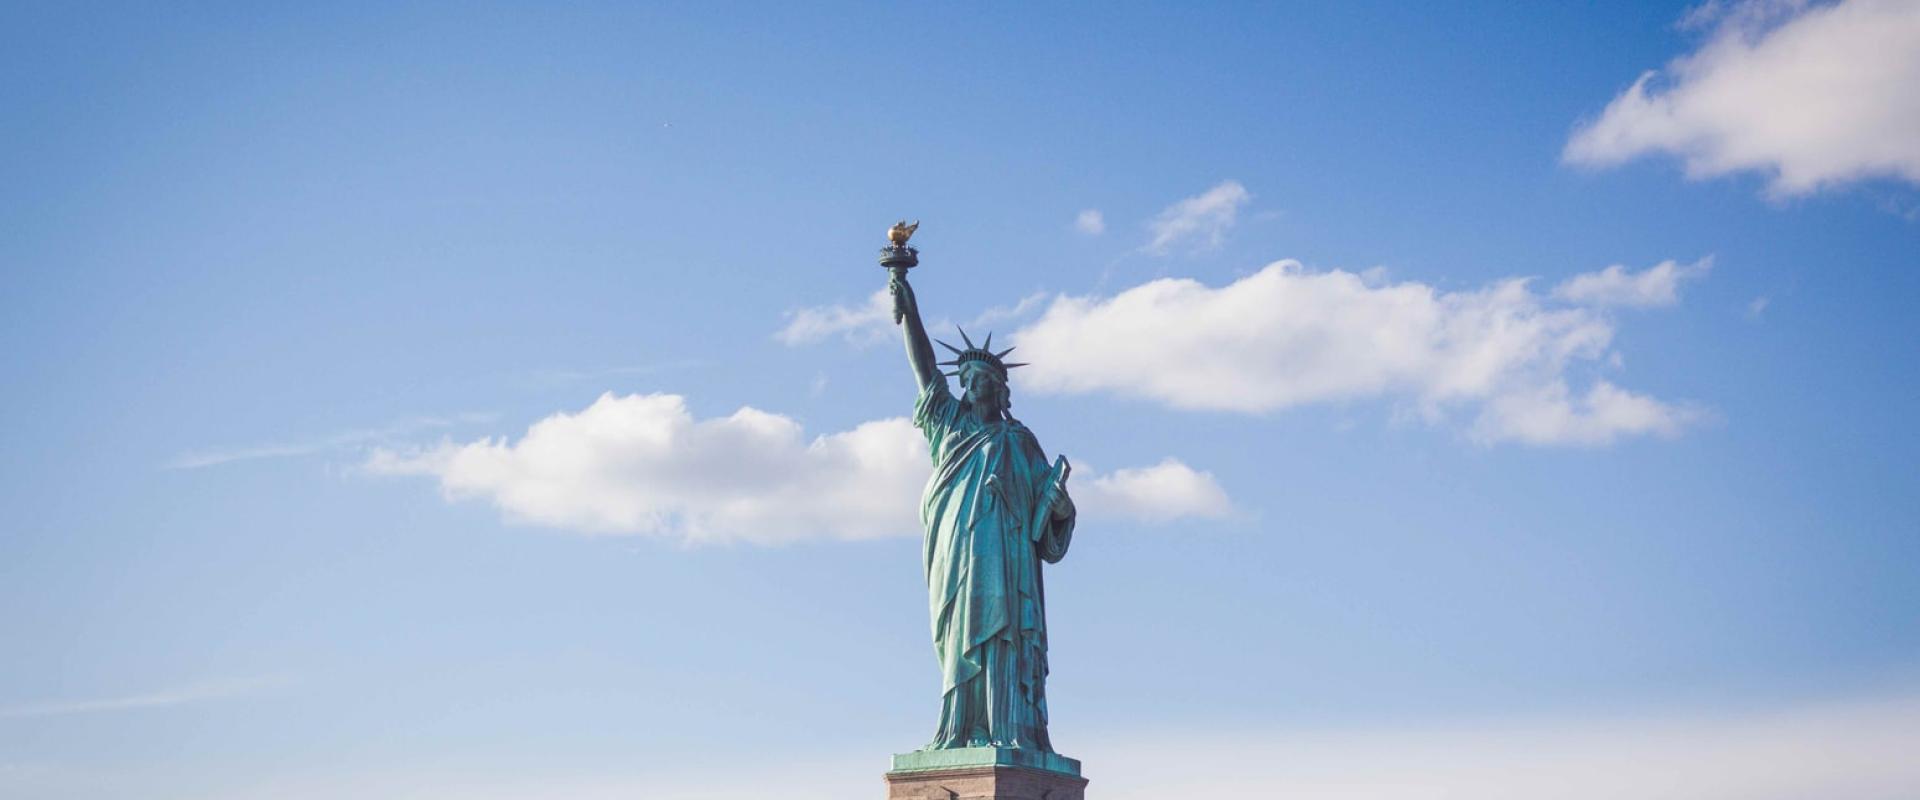 تمثال الحرية، أمريكا، الصورة لـ Ferdinand Stöhr نقلا عن Unsplash 